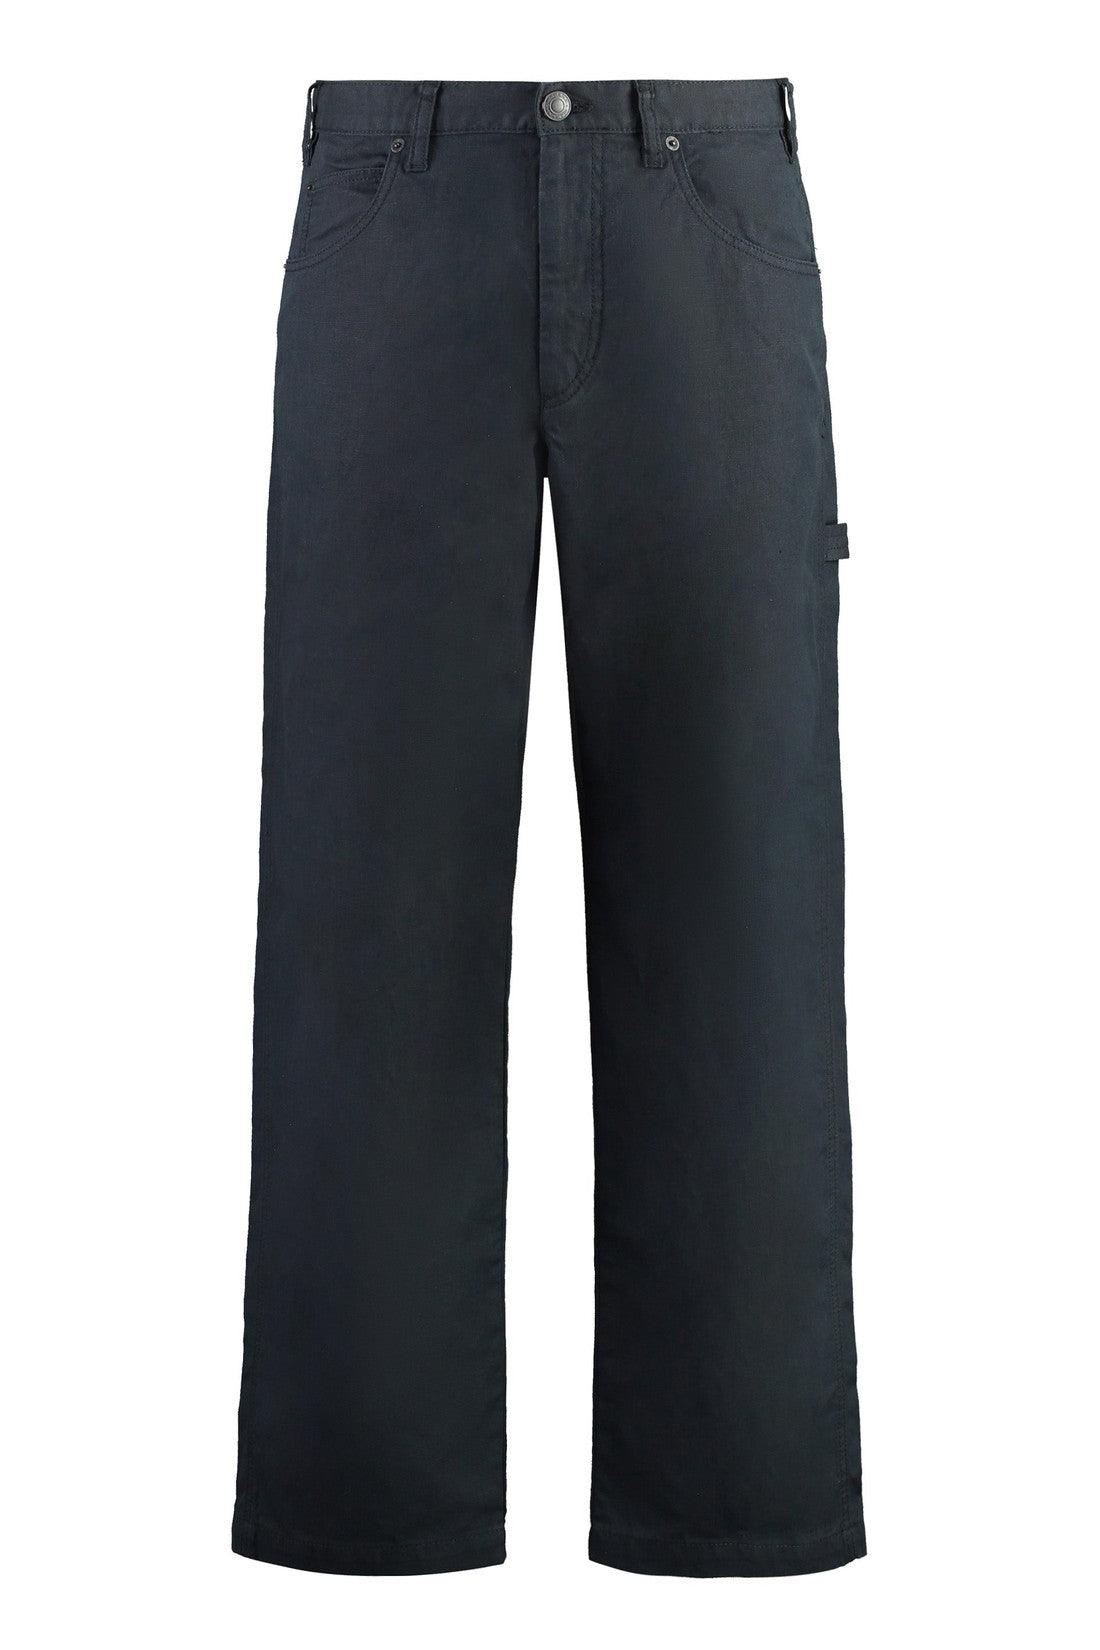 Marant-OUTLET-SALE-Cotton-linen trousers-ARCHIVIST